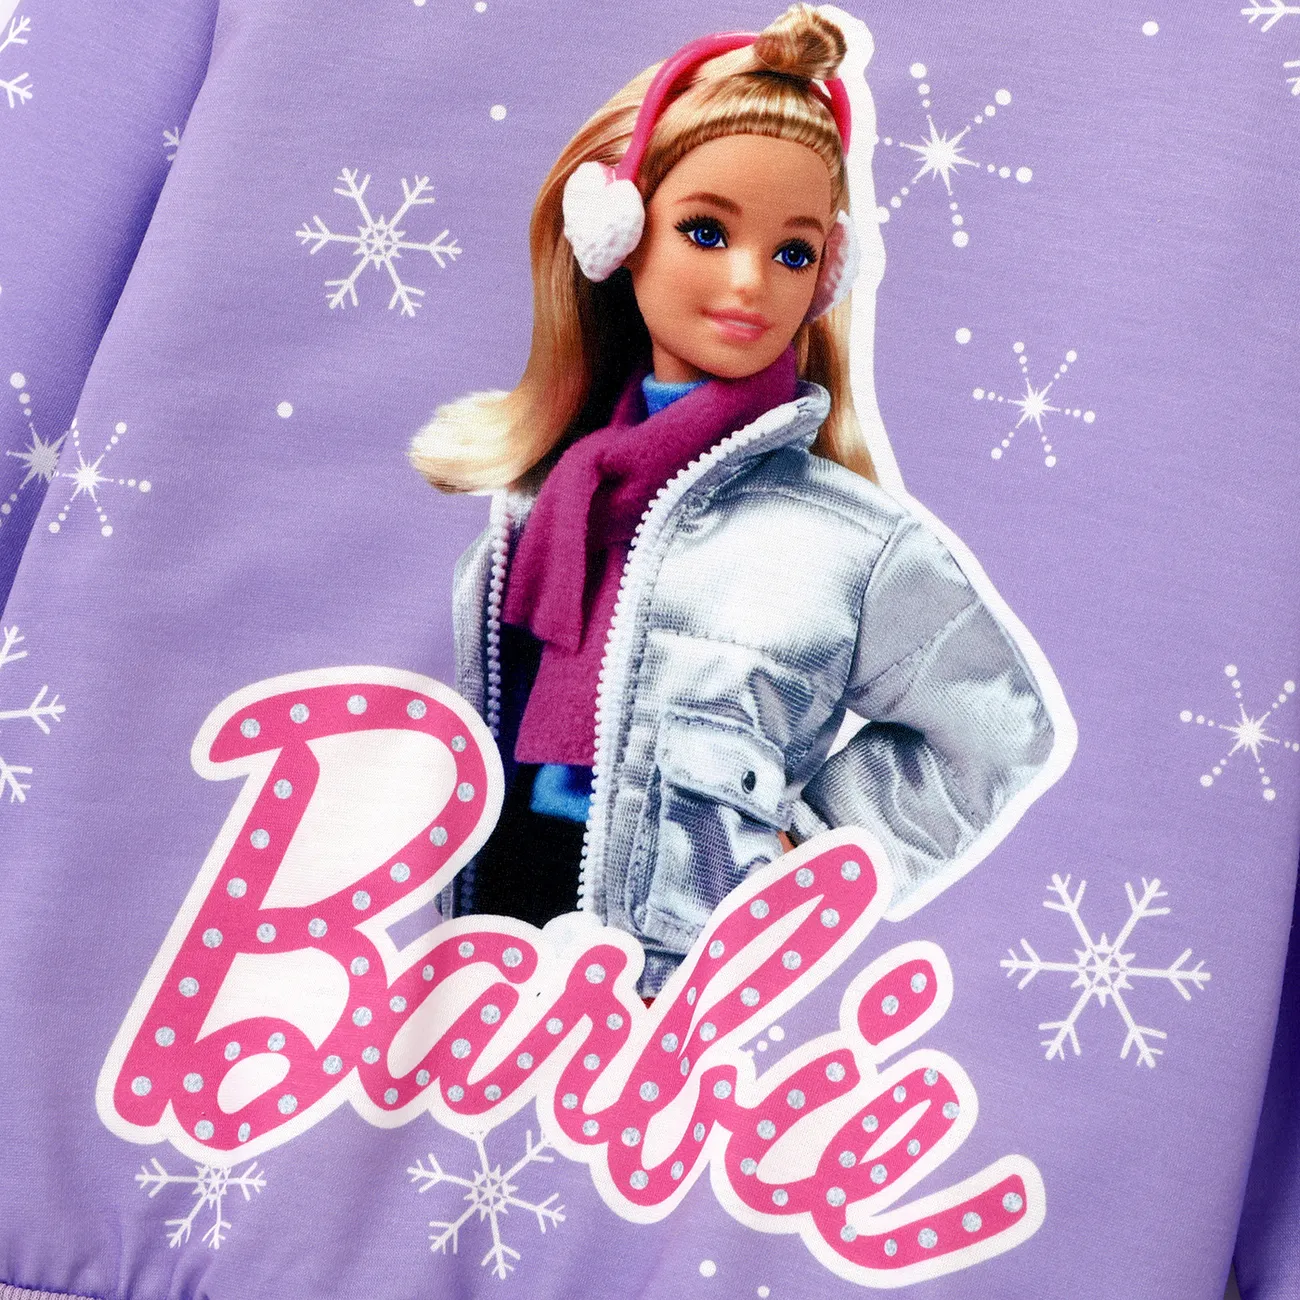 Barbie Enfant en bas âge Fille Enfantin Sweat-shirt Violet big image 1